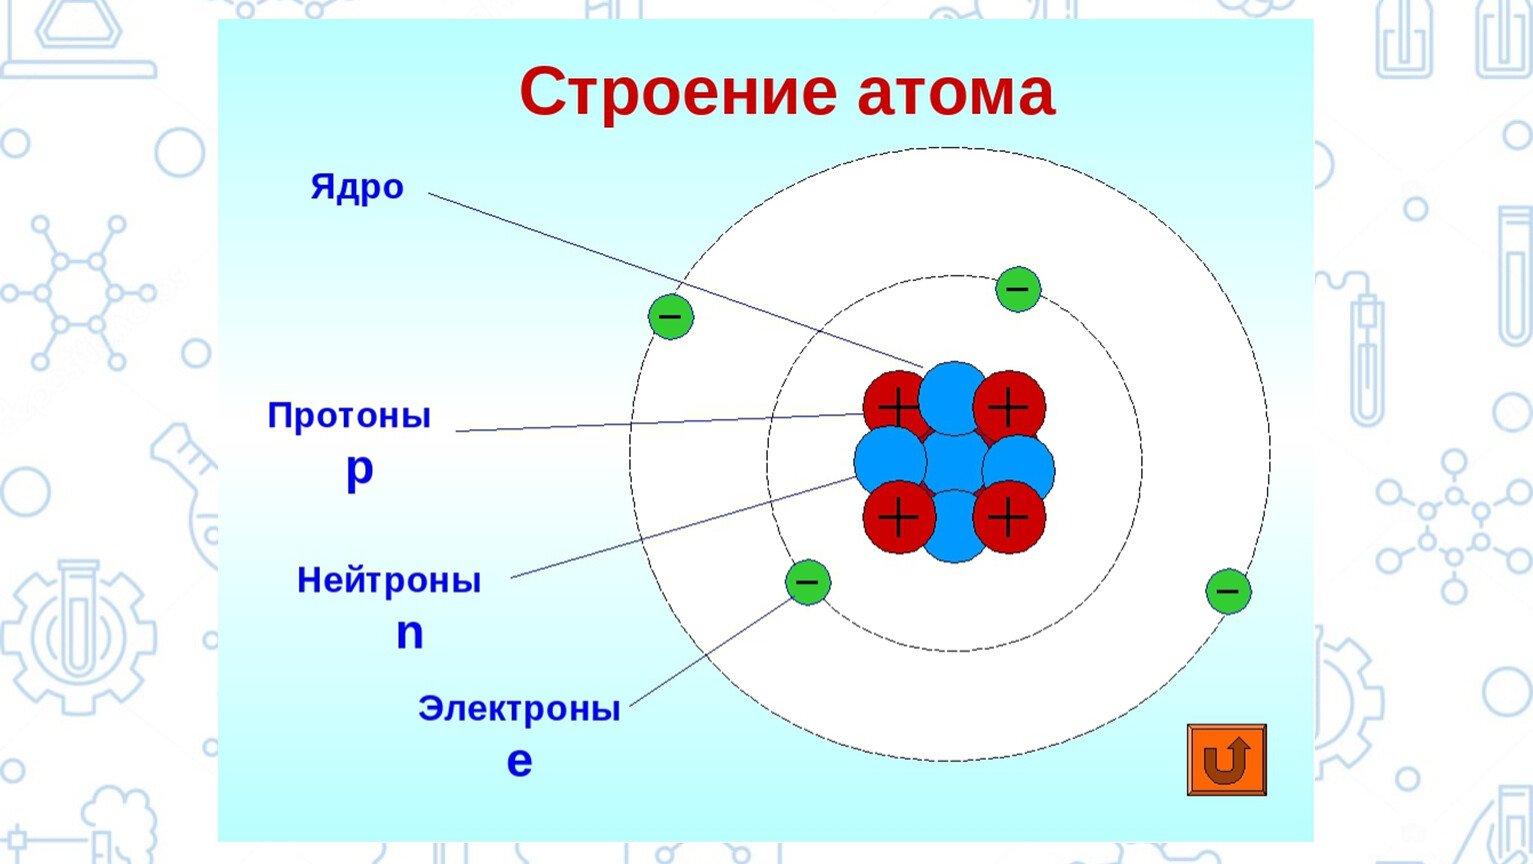 Строение атома фтора (f), схема и примеры